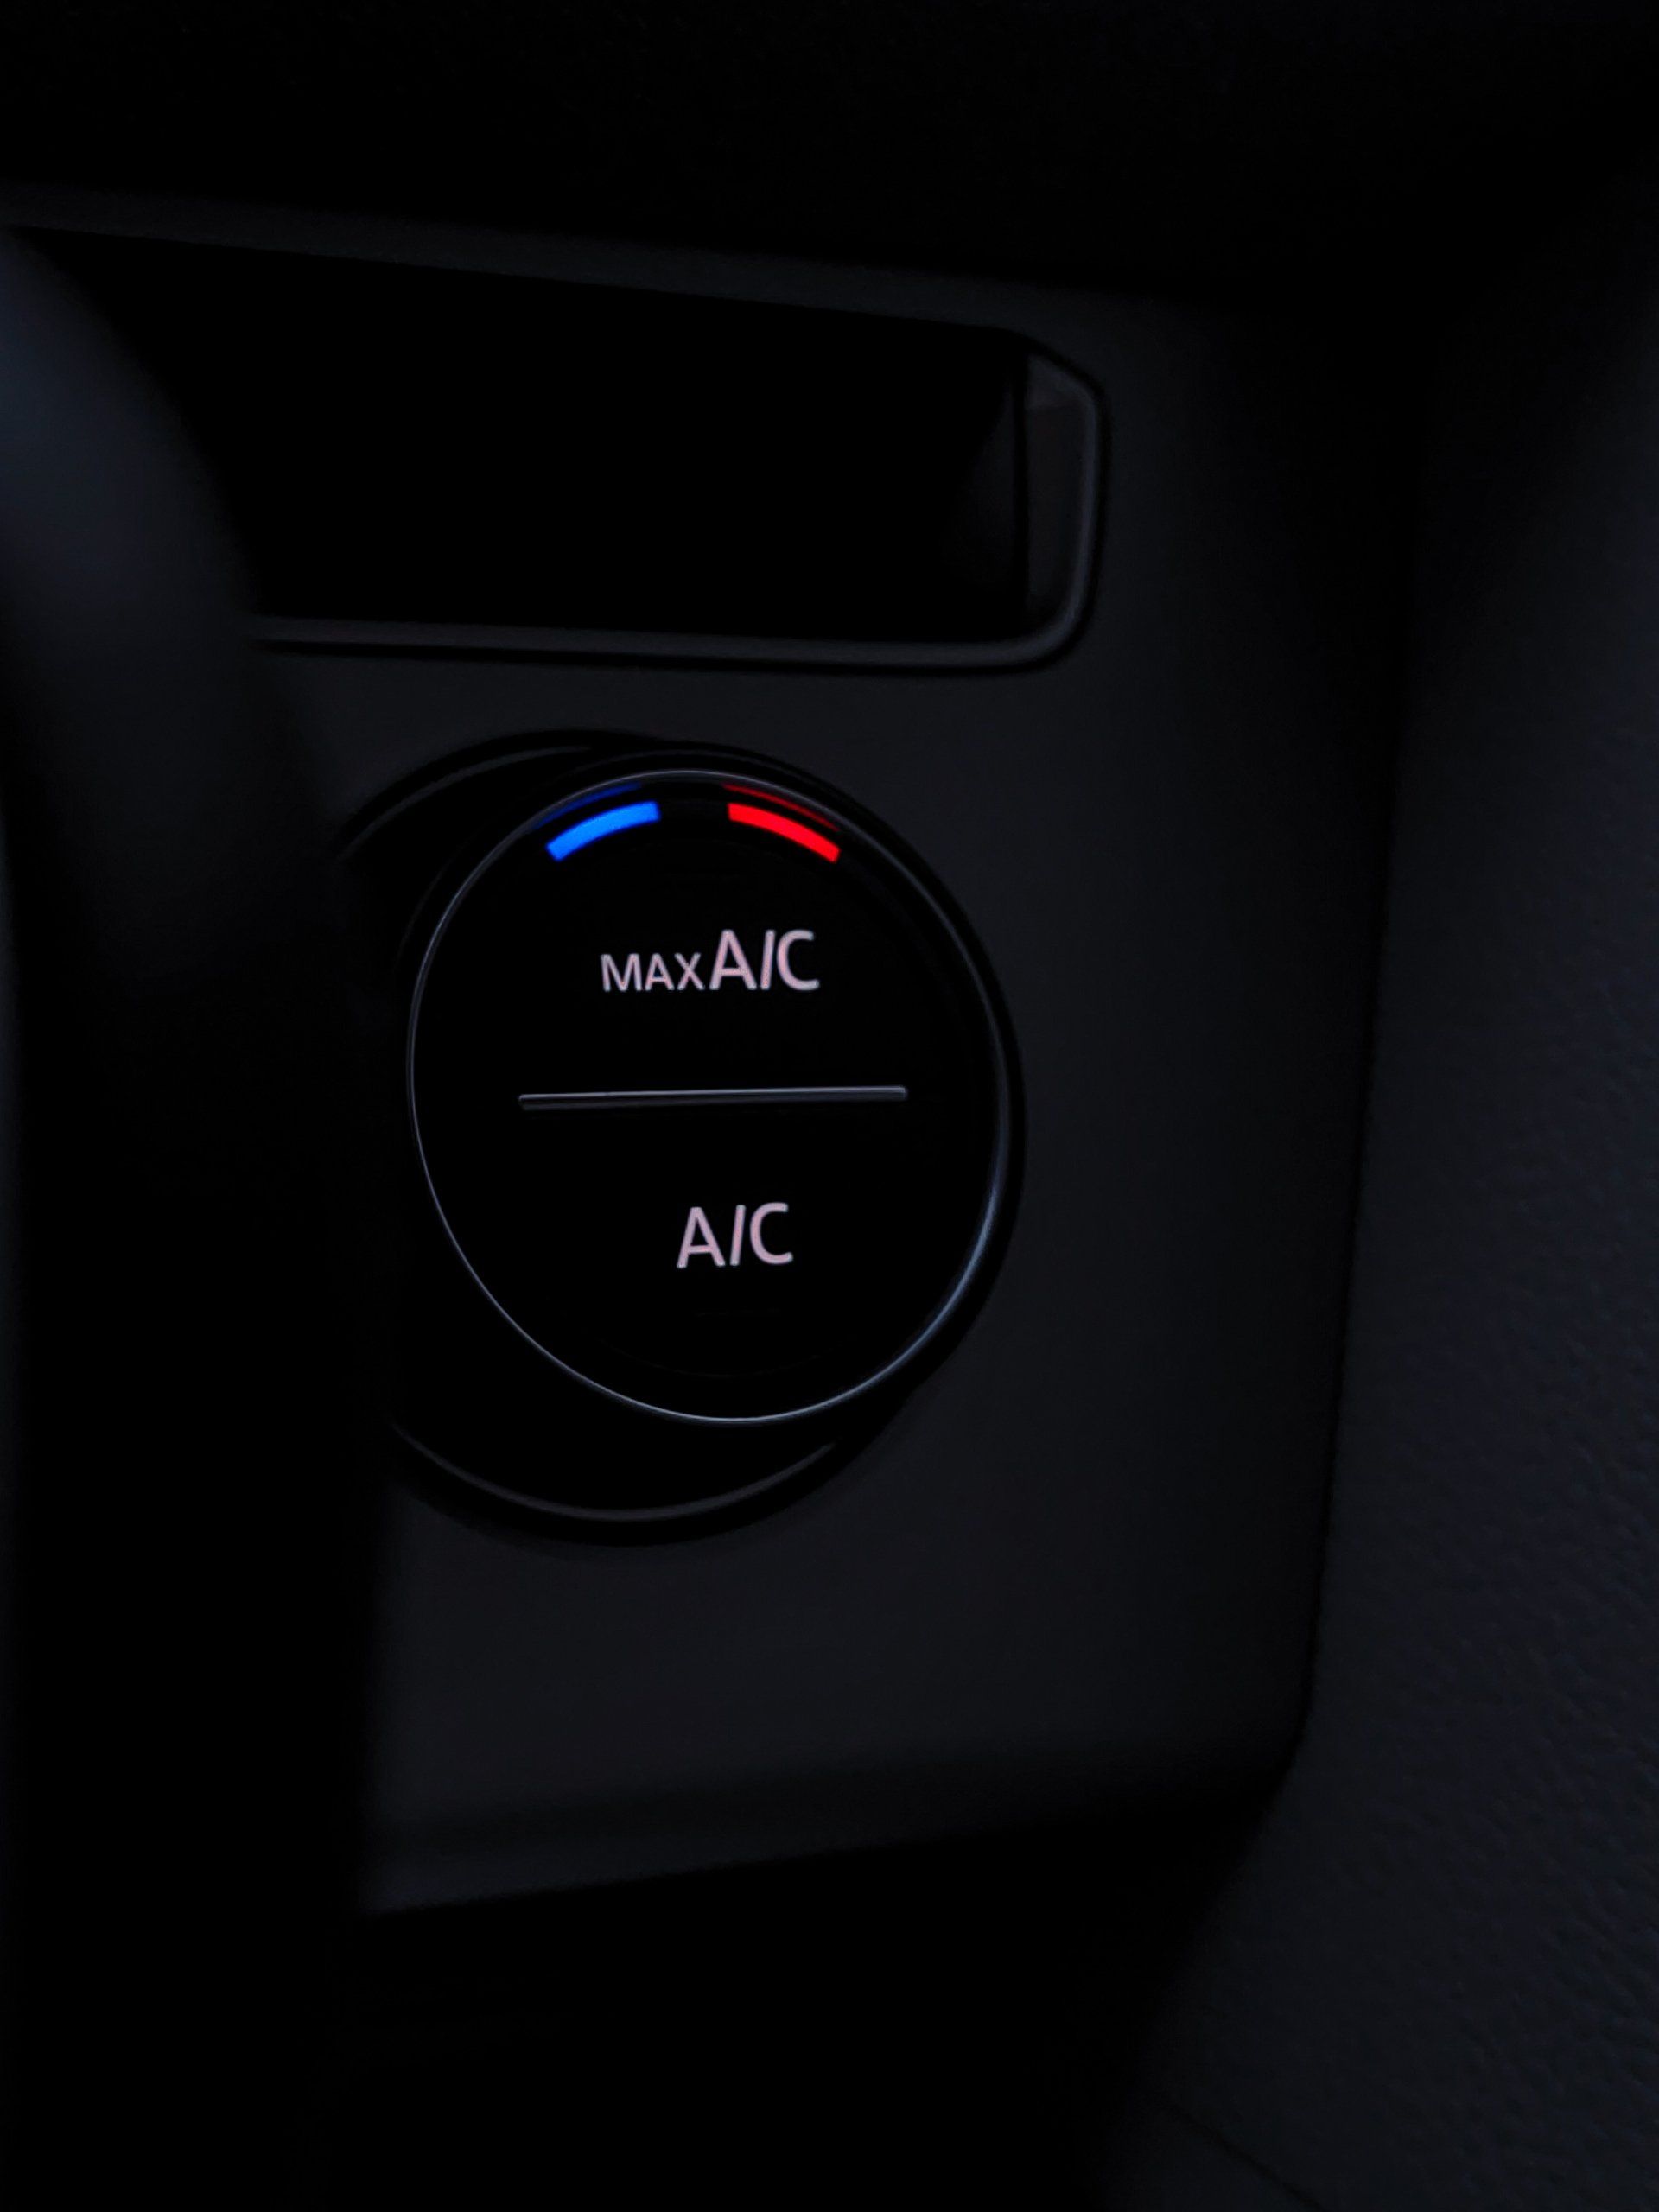 a close up of a button that says max a/c and a/c